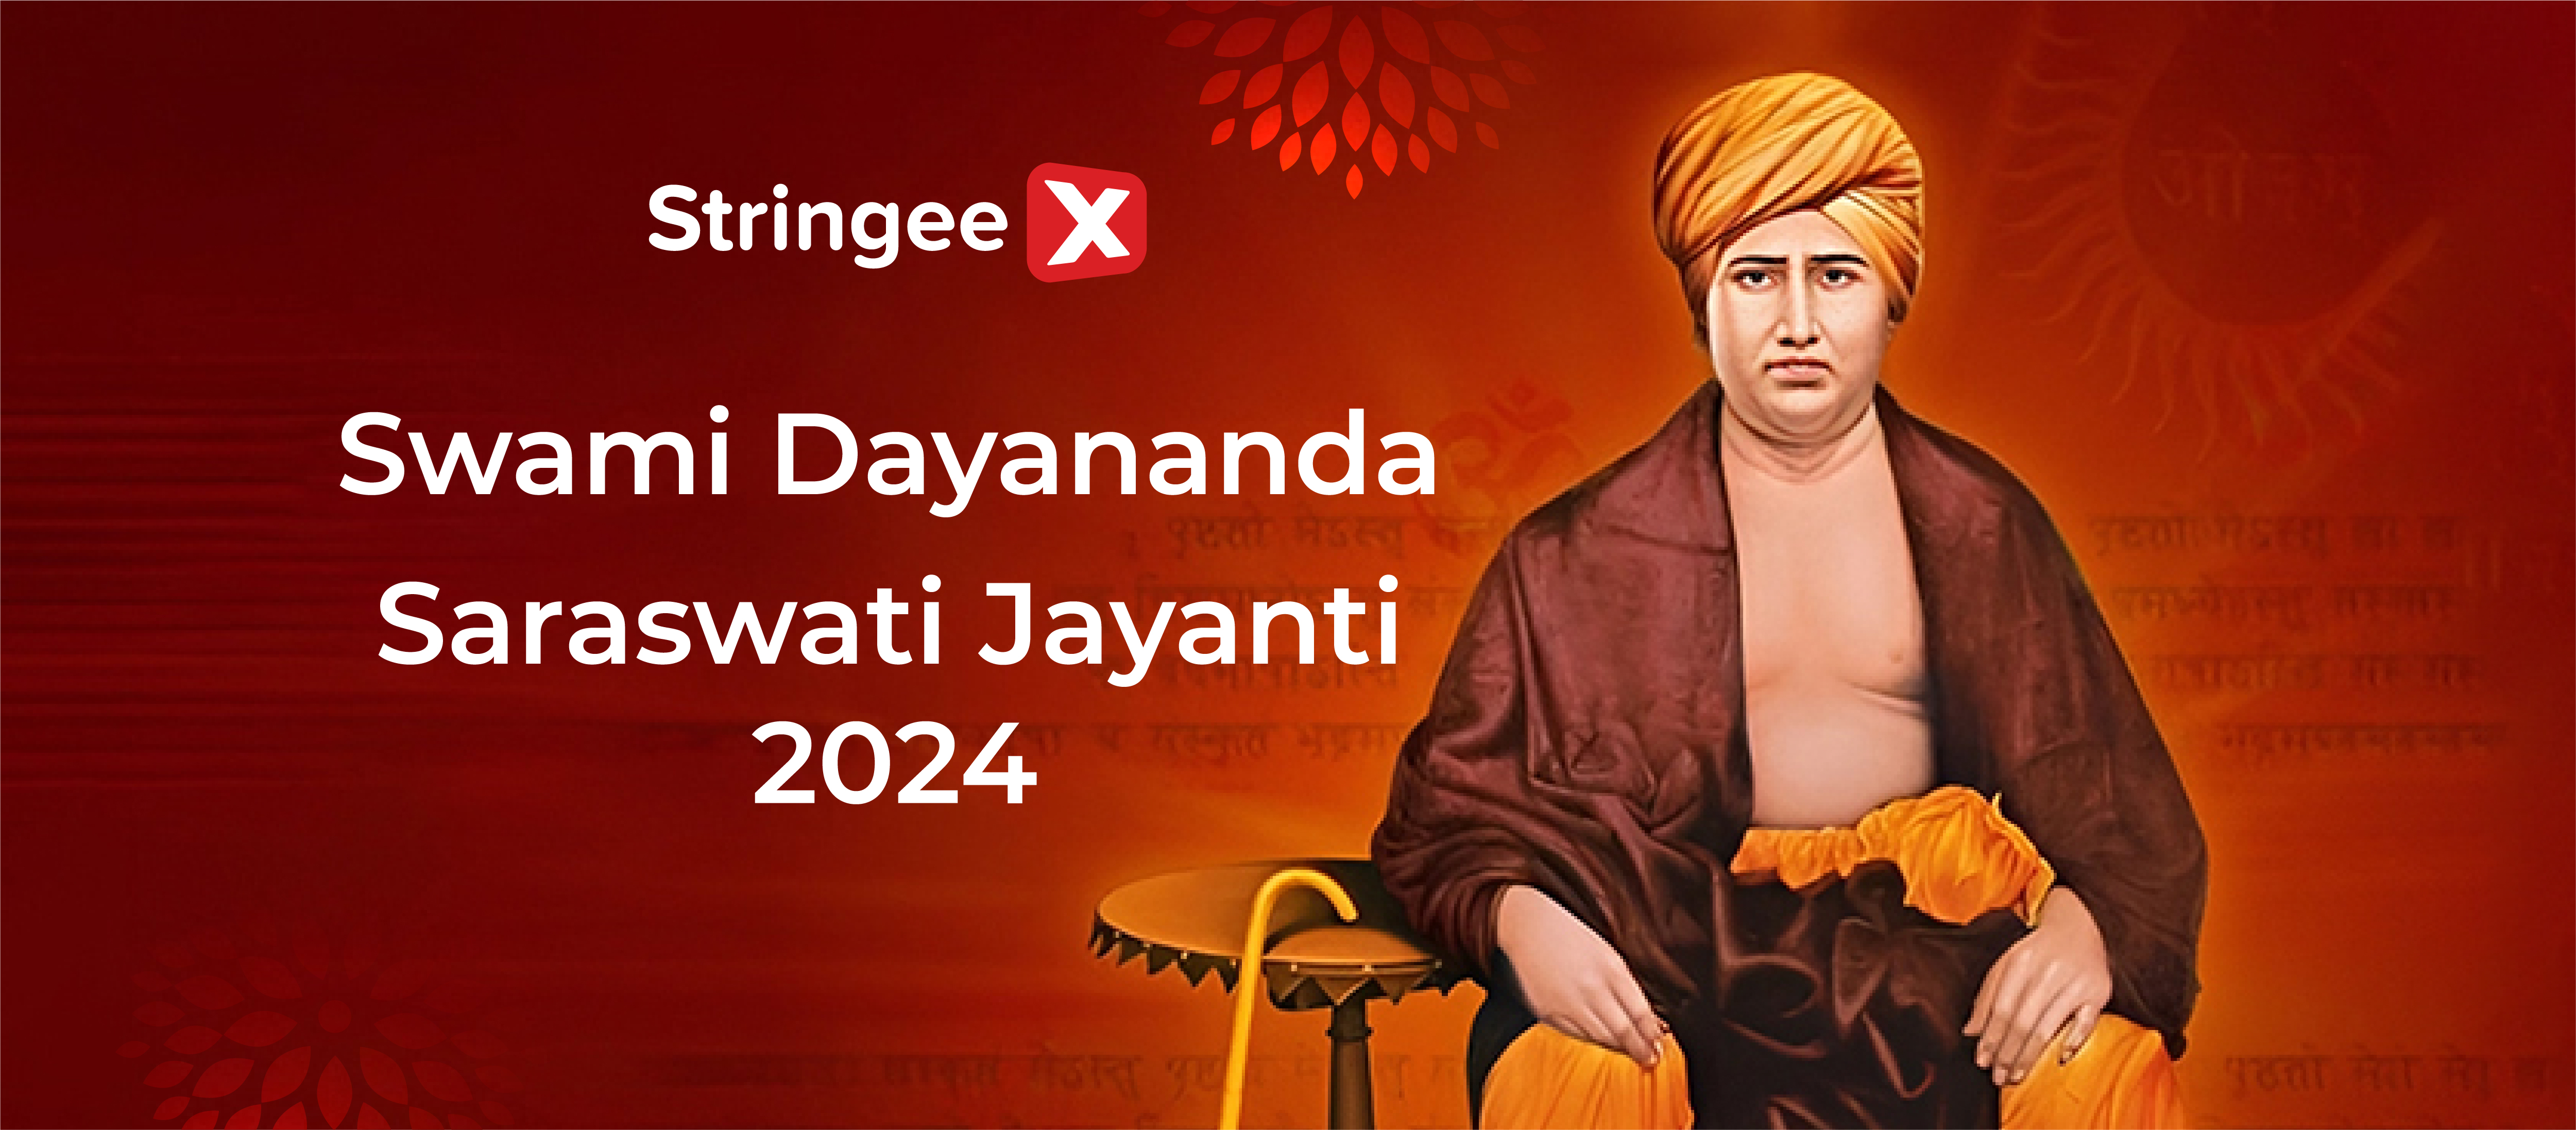 When Does Swami Dayananda Saraswati Jayanti 2024 Take Place?